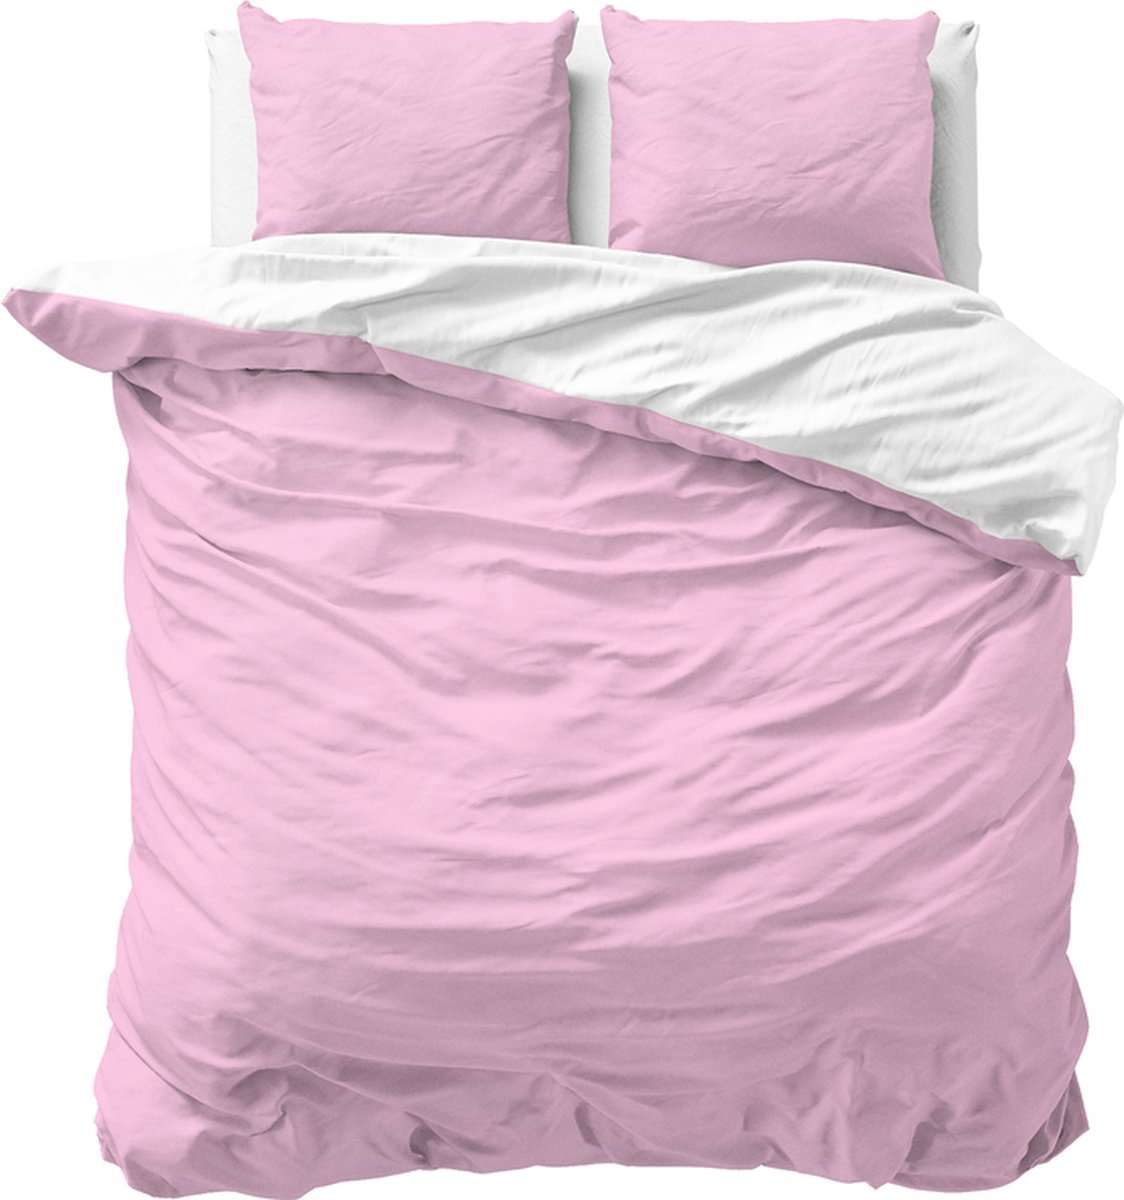 Luxe dekbedovertrek uni roze/wit - 240x200/220 (lits-jumeaux) - zacht en fijne kwaliteit - stijlvolle uitstraling - met handige drukknopen